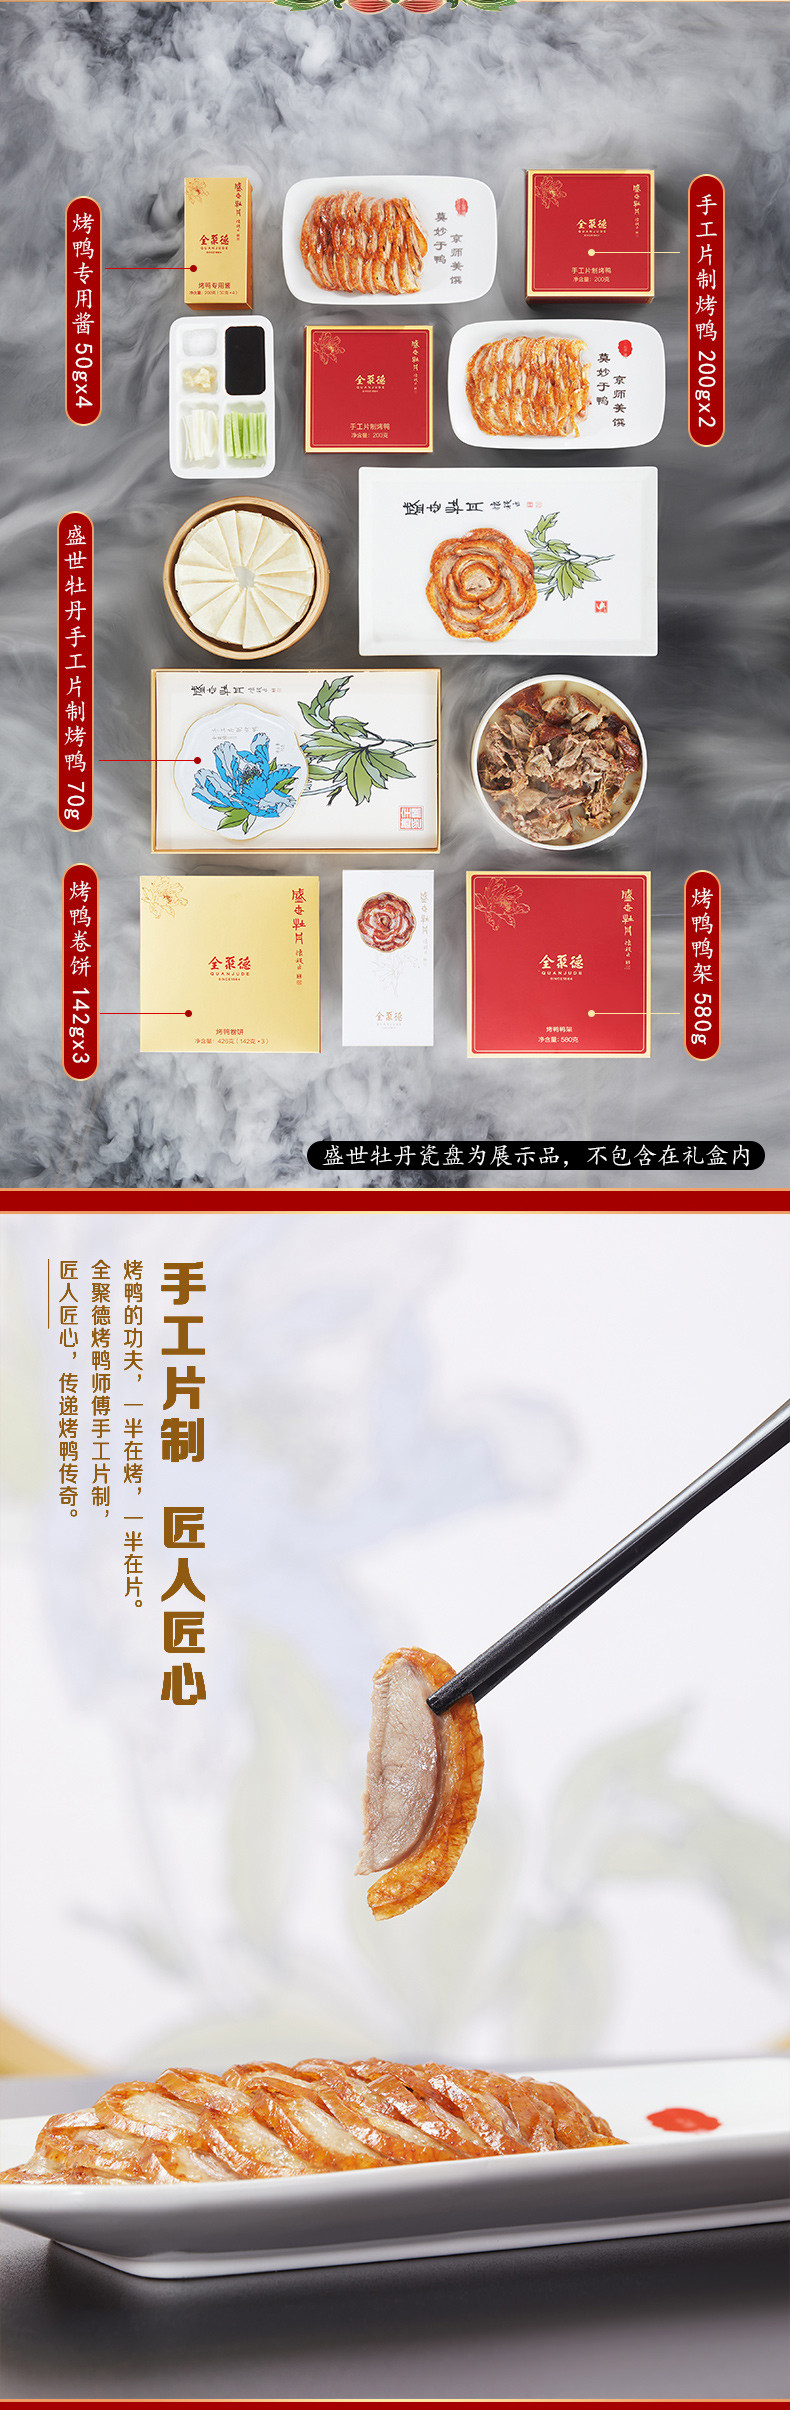 全聚德 北京烤鸭礼盒中华老字号北京特产 盛世牡丹手工片制烤鸭